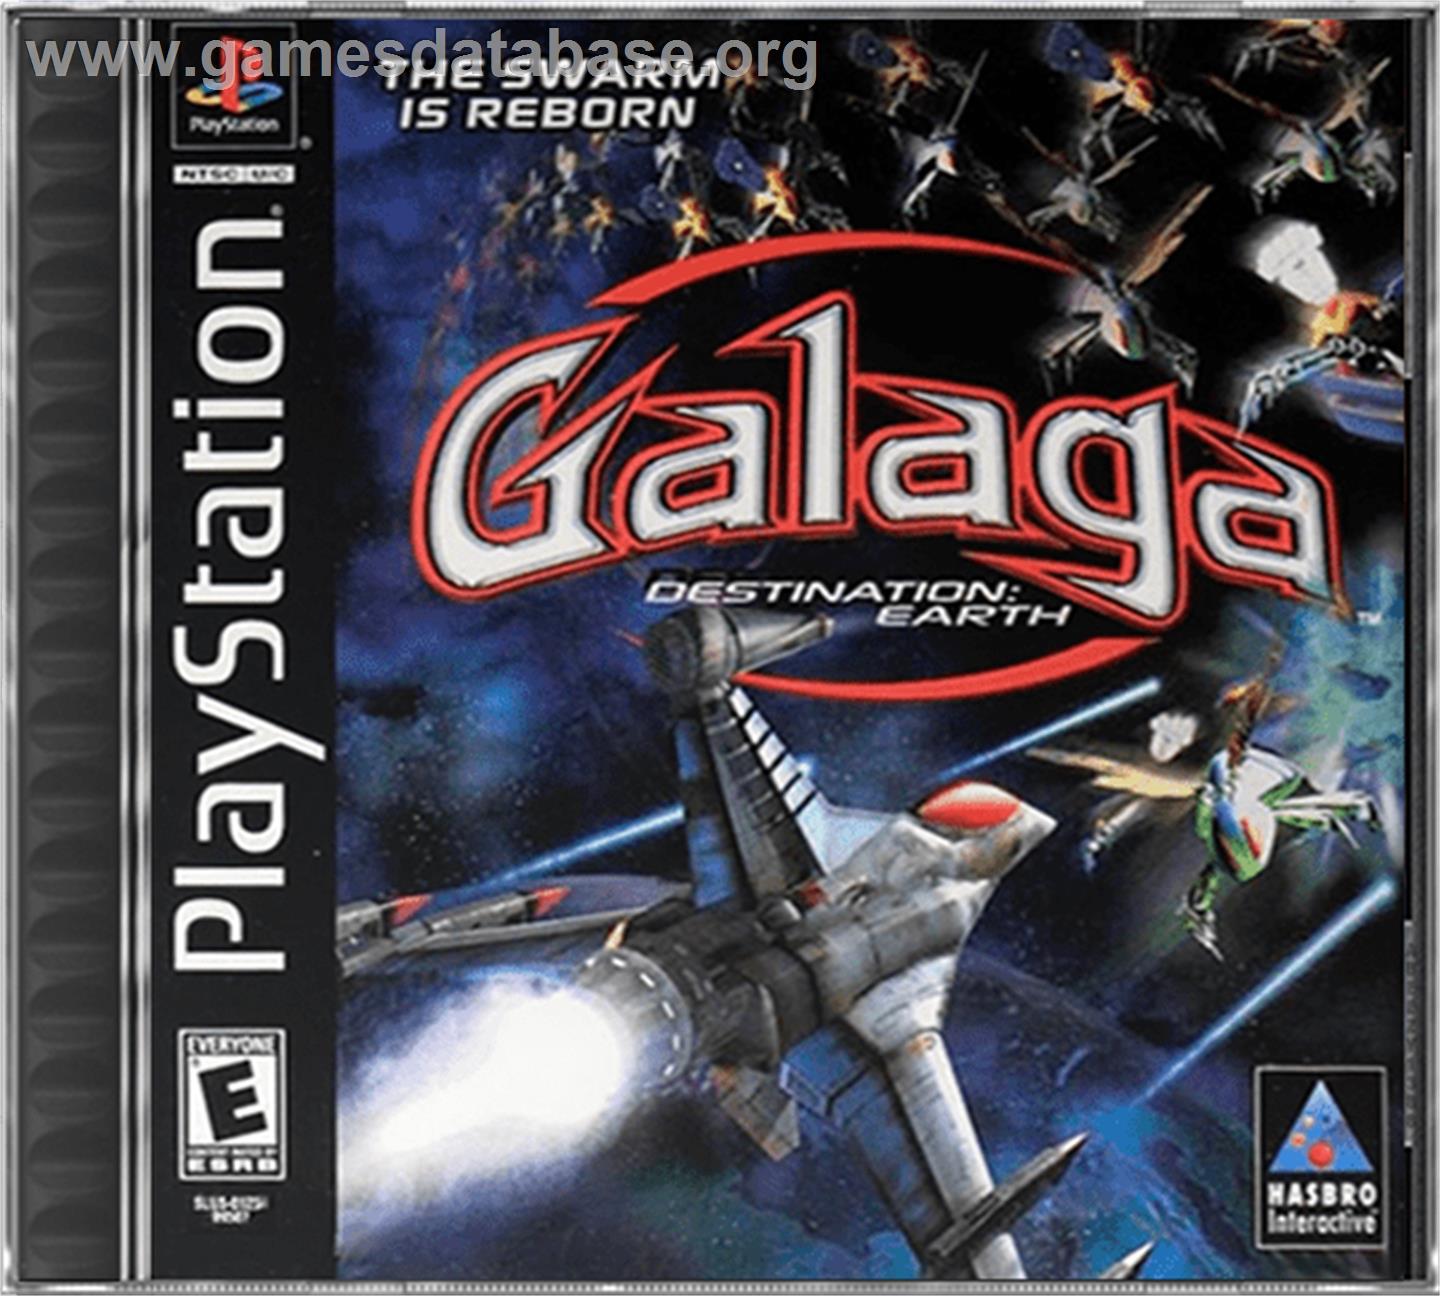 Galaga: Destination Earth - Sony Playstation - Artwork - Box